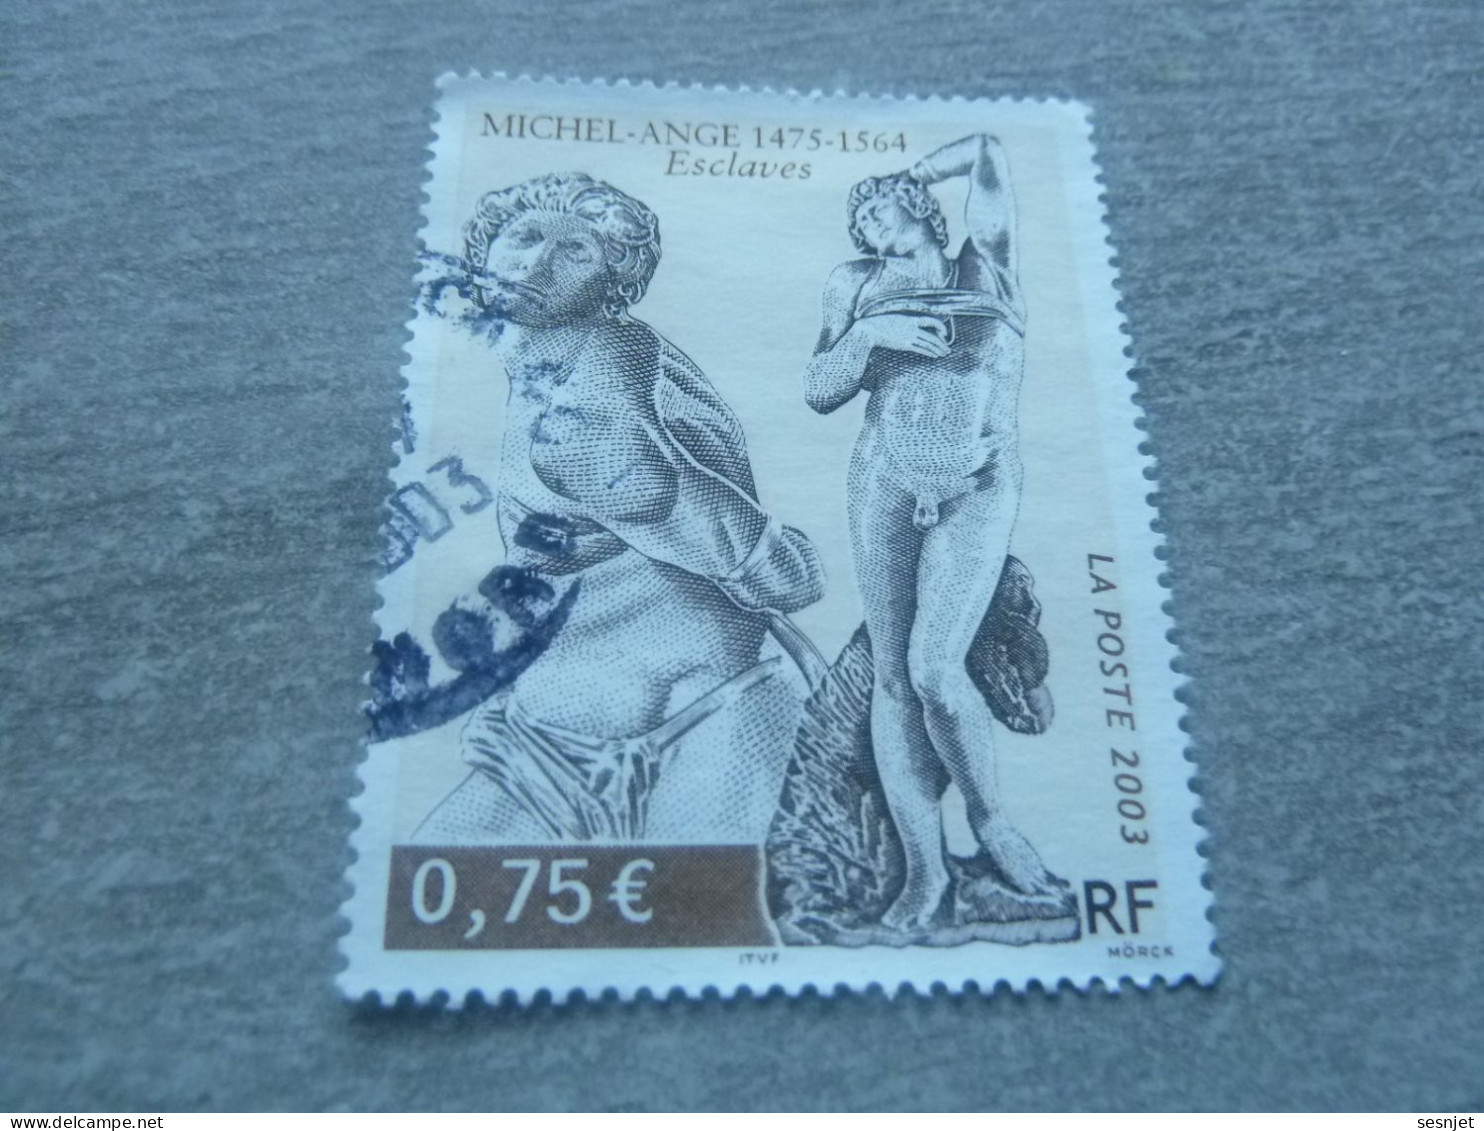 Michel-Ange (1475-1564) - Esclaves - 0.75 € - Yt 3558 - Multicolore - Oblitéré - Année 2003 - - Skulpturen